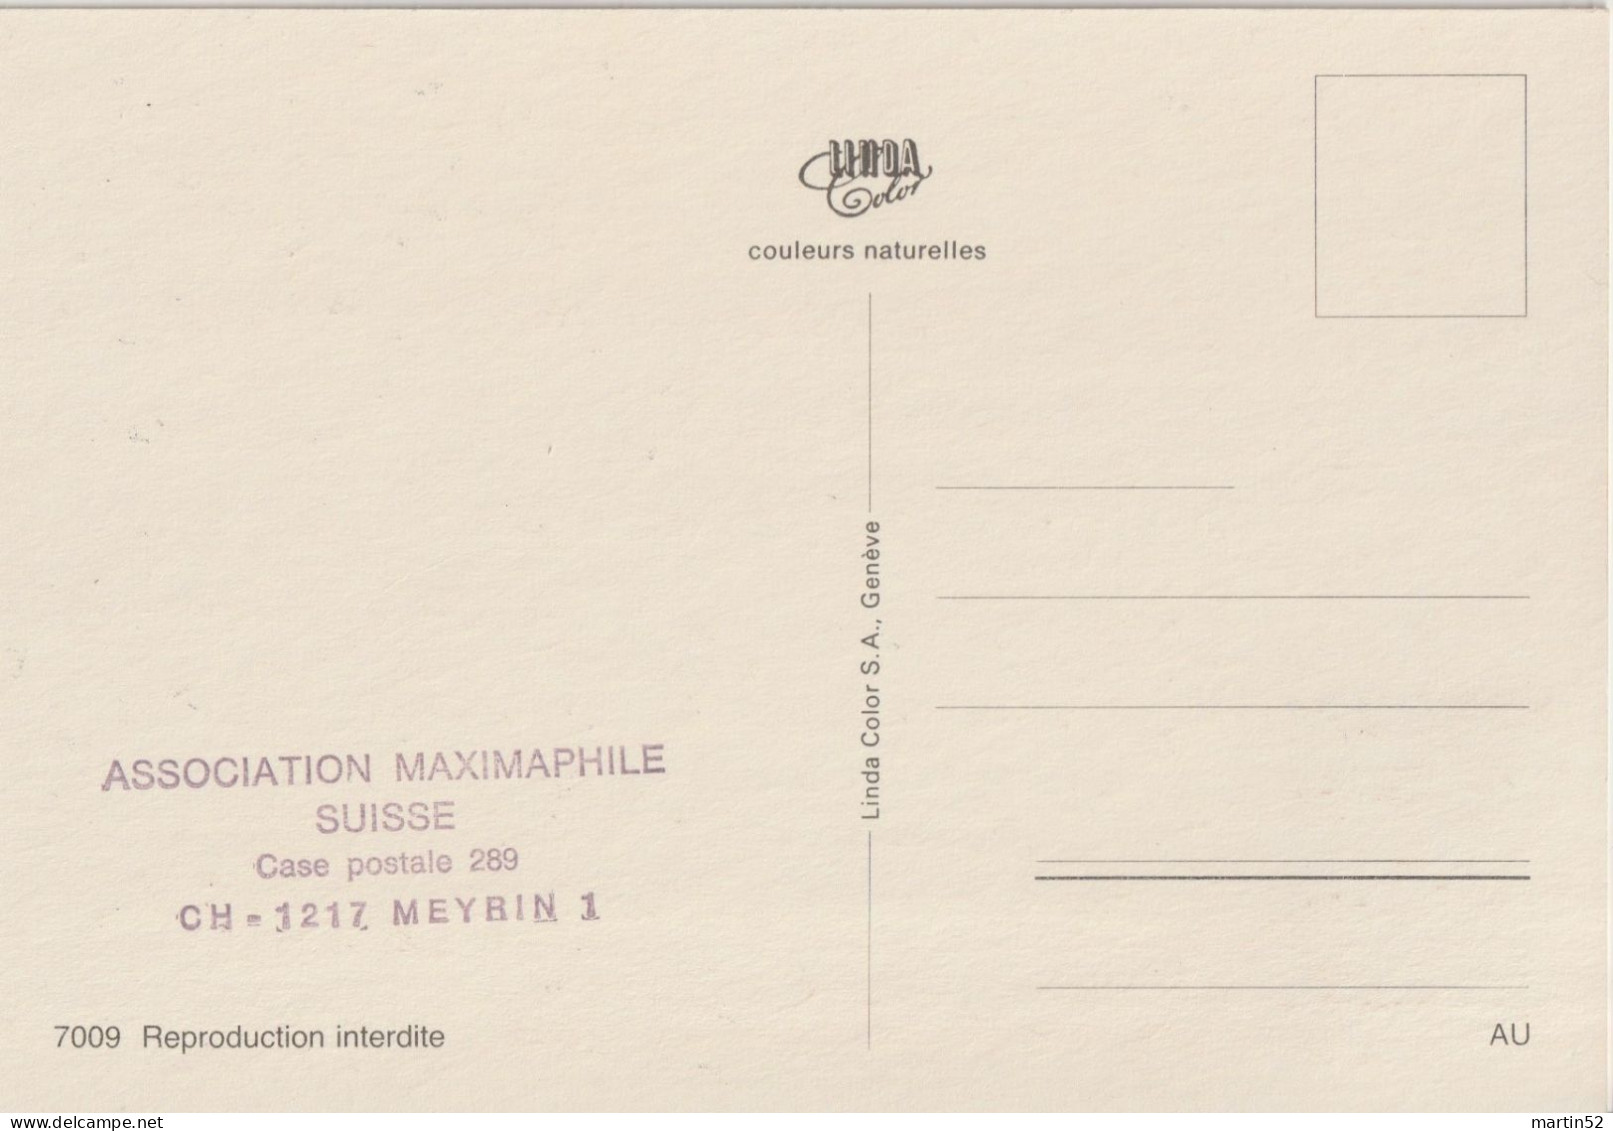 Schweiz Suisse 1984: Zu 706 Mi 1268 Yv 1197 SAINT IMIER 884-1984 Tour St.Martin Sur CM Multivues Avec ⊙ ST.IMIER 21.2.84 - Horloges